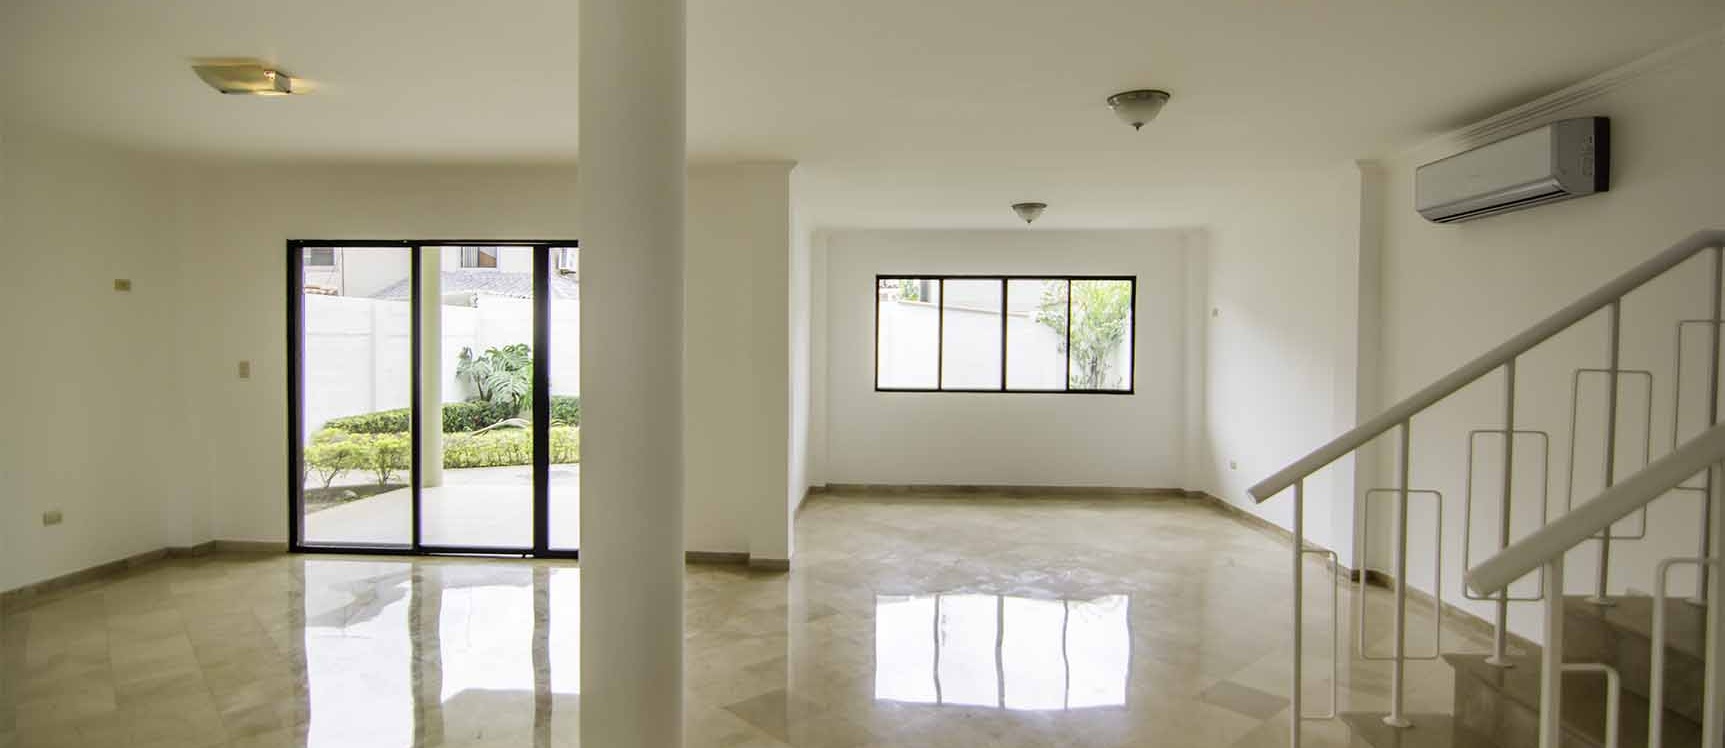 GeoBienes - Casa en alquiler Urb. Vía al Sol, Vía a la Costa - Plusvalia Guayaquil Casas de venta y alquiler Inmobiliaria Ecuador